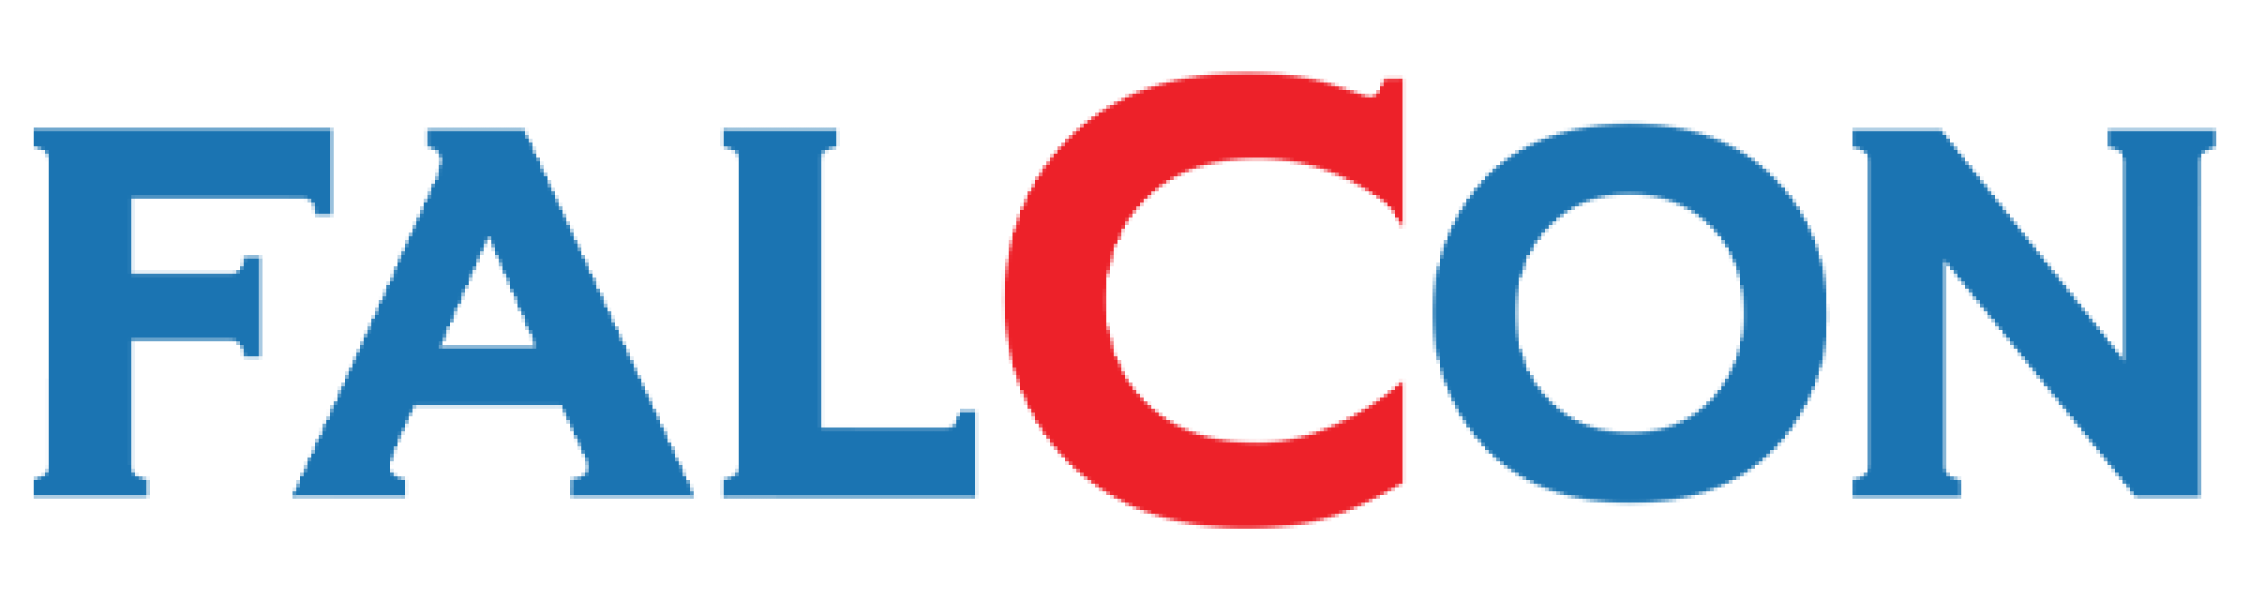 falcon-logo